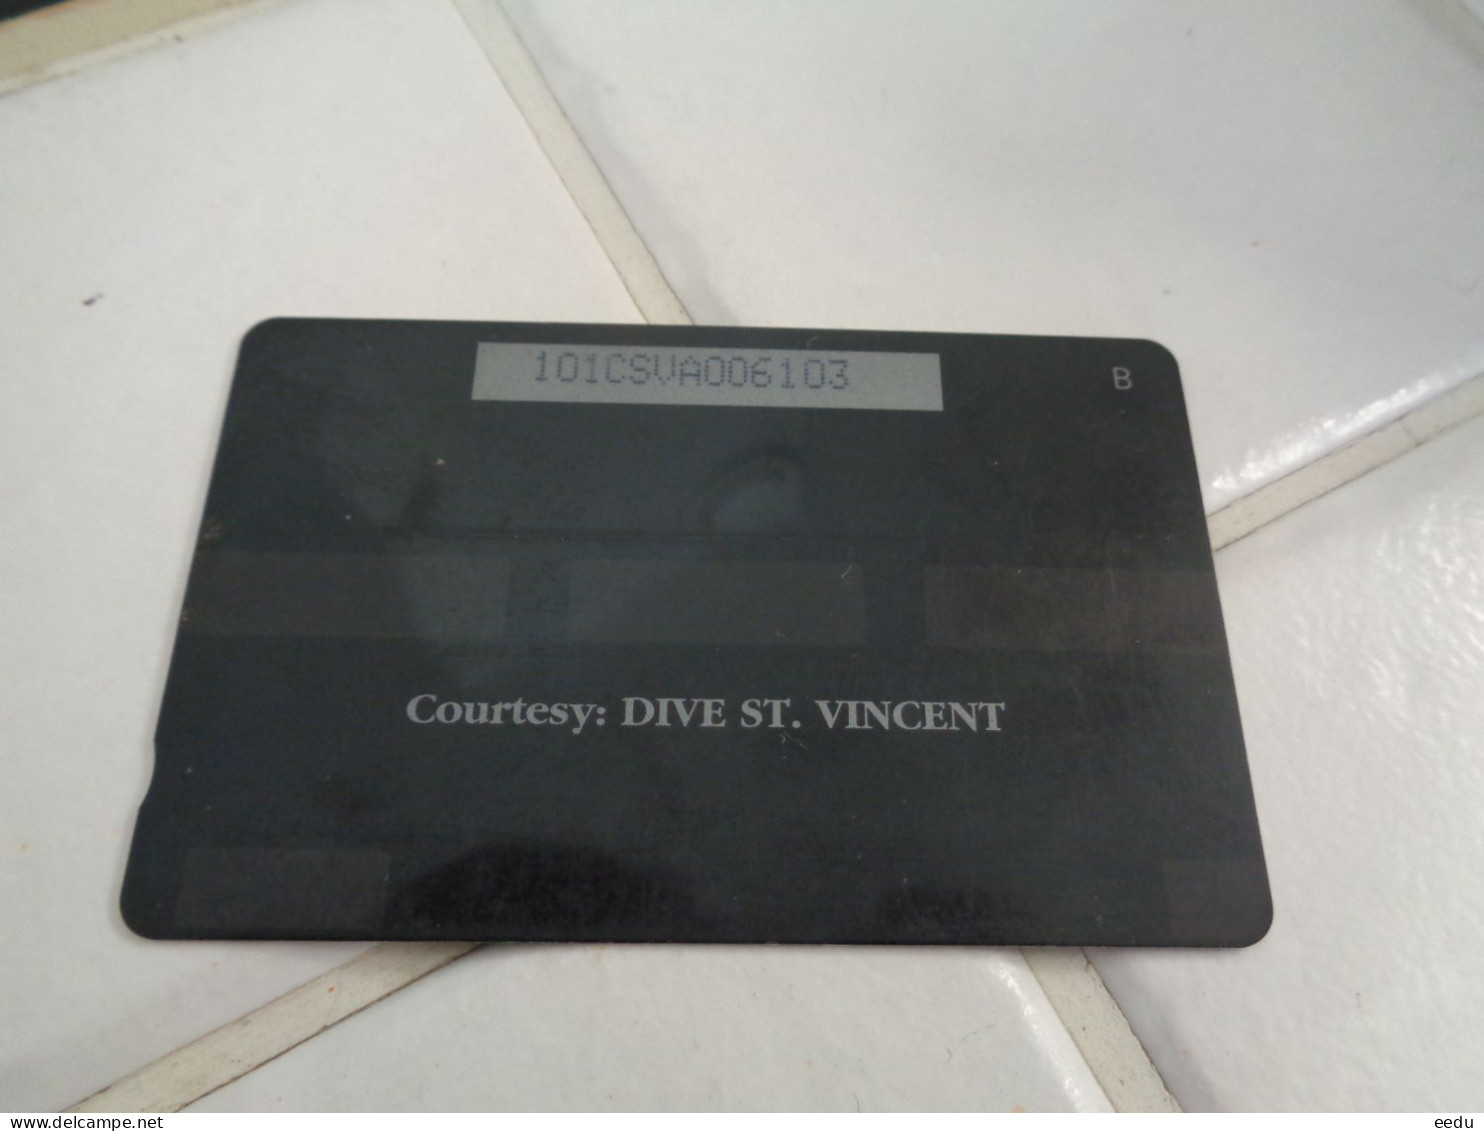 St.Vincent & The Grenadines Phonecard - Saint-Vincent-et-les-Grenadines